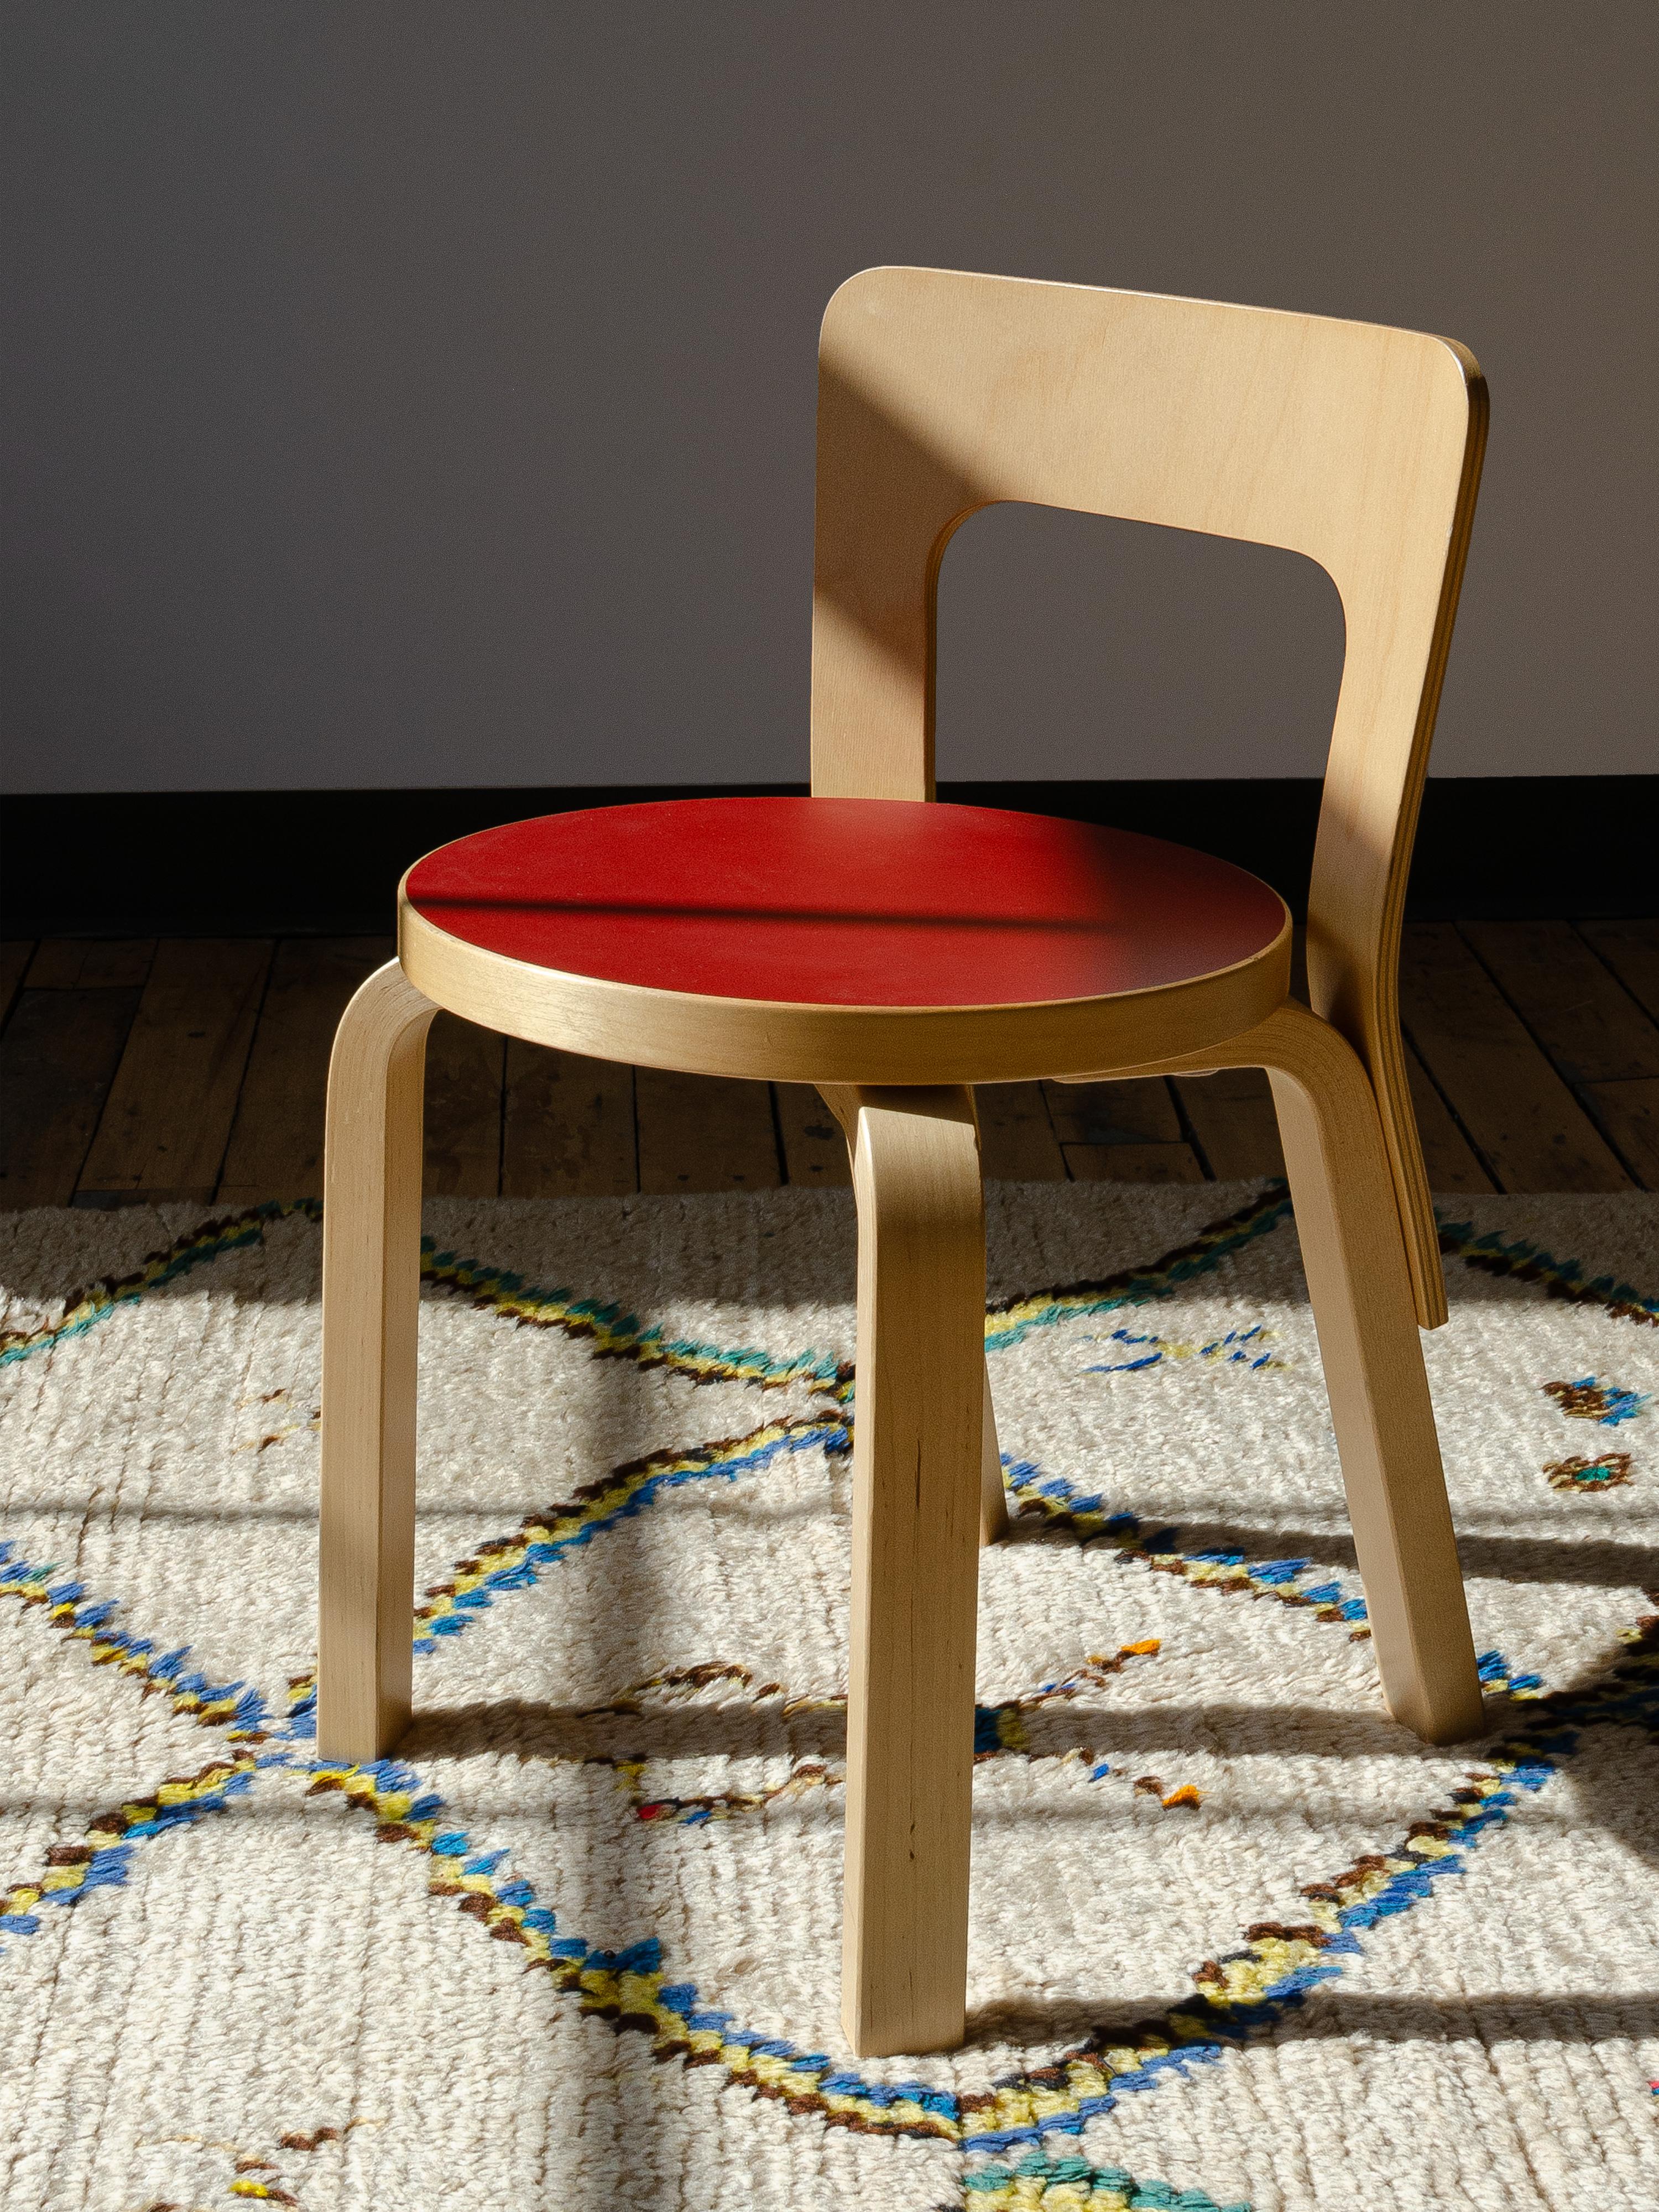 La chaise pour enfants N65 d'Artek est un modèle légèrement redimensionné de la chaise 65 conçue par Alvar Aalto en 1935. En 2013, en l'honneur du 80e anniversaire, Artek a sorti ces meubles classiques pour une durée limitée. L'assise de la chaise